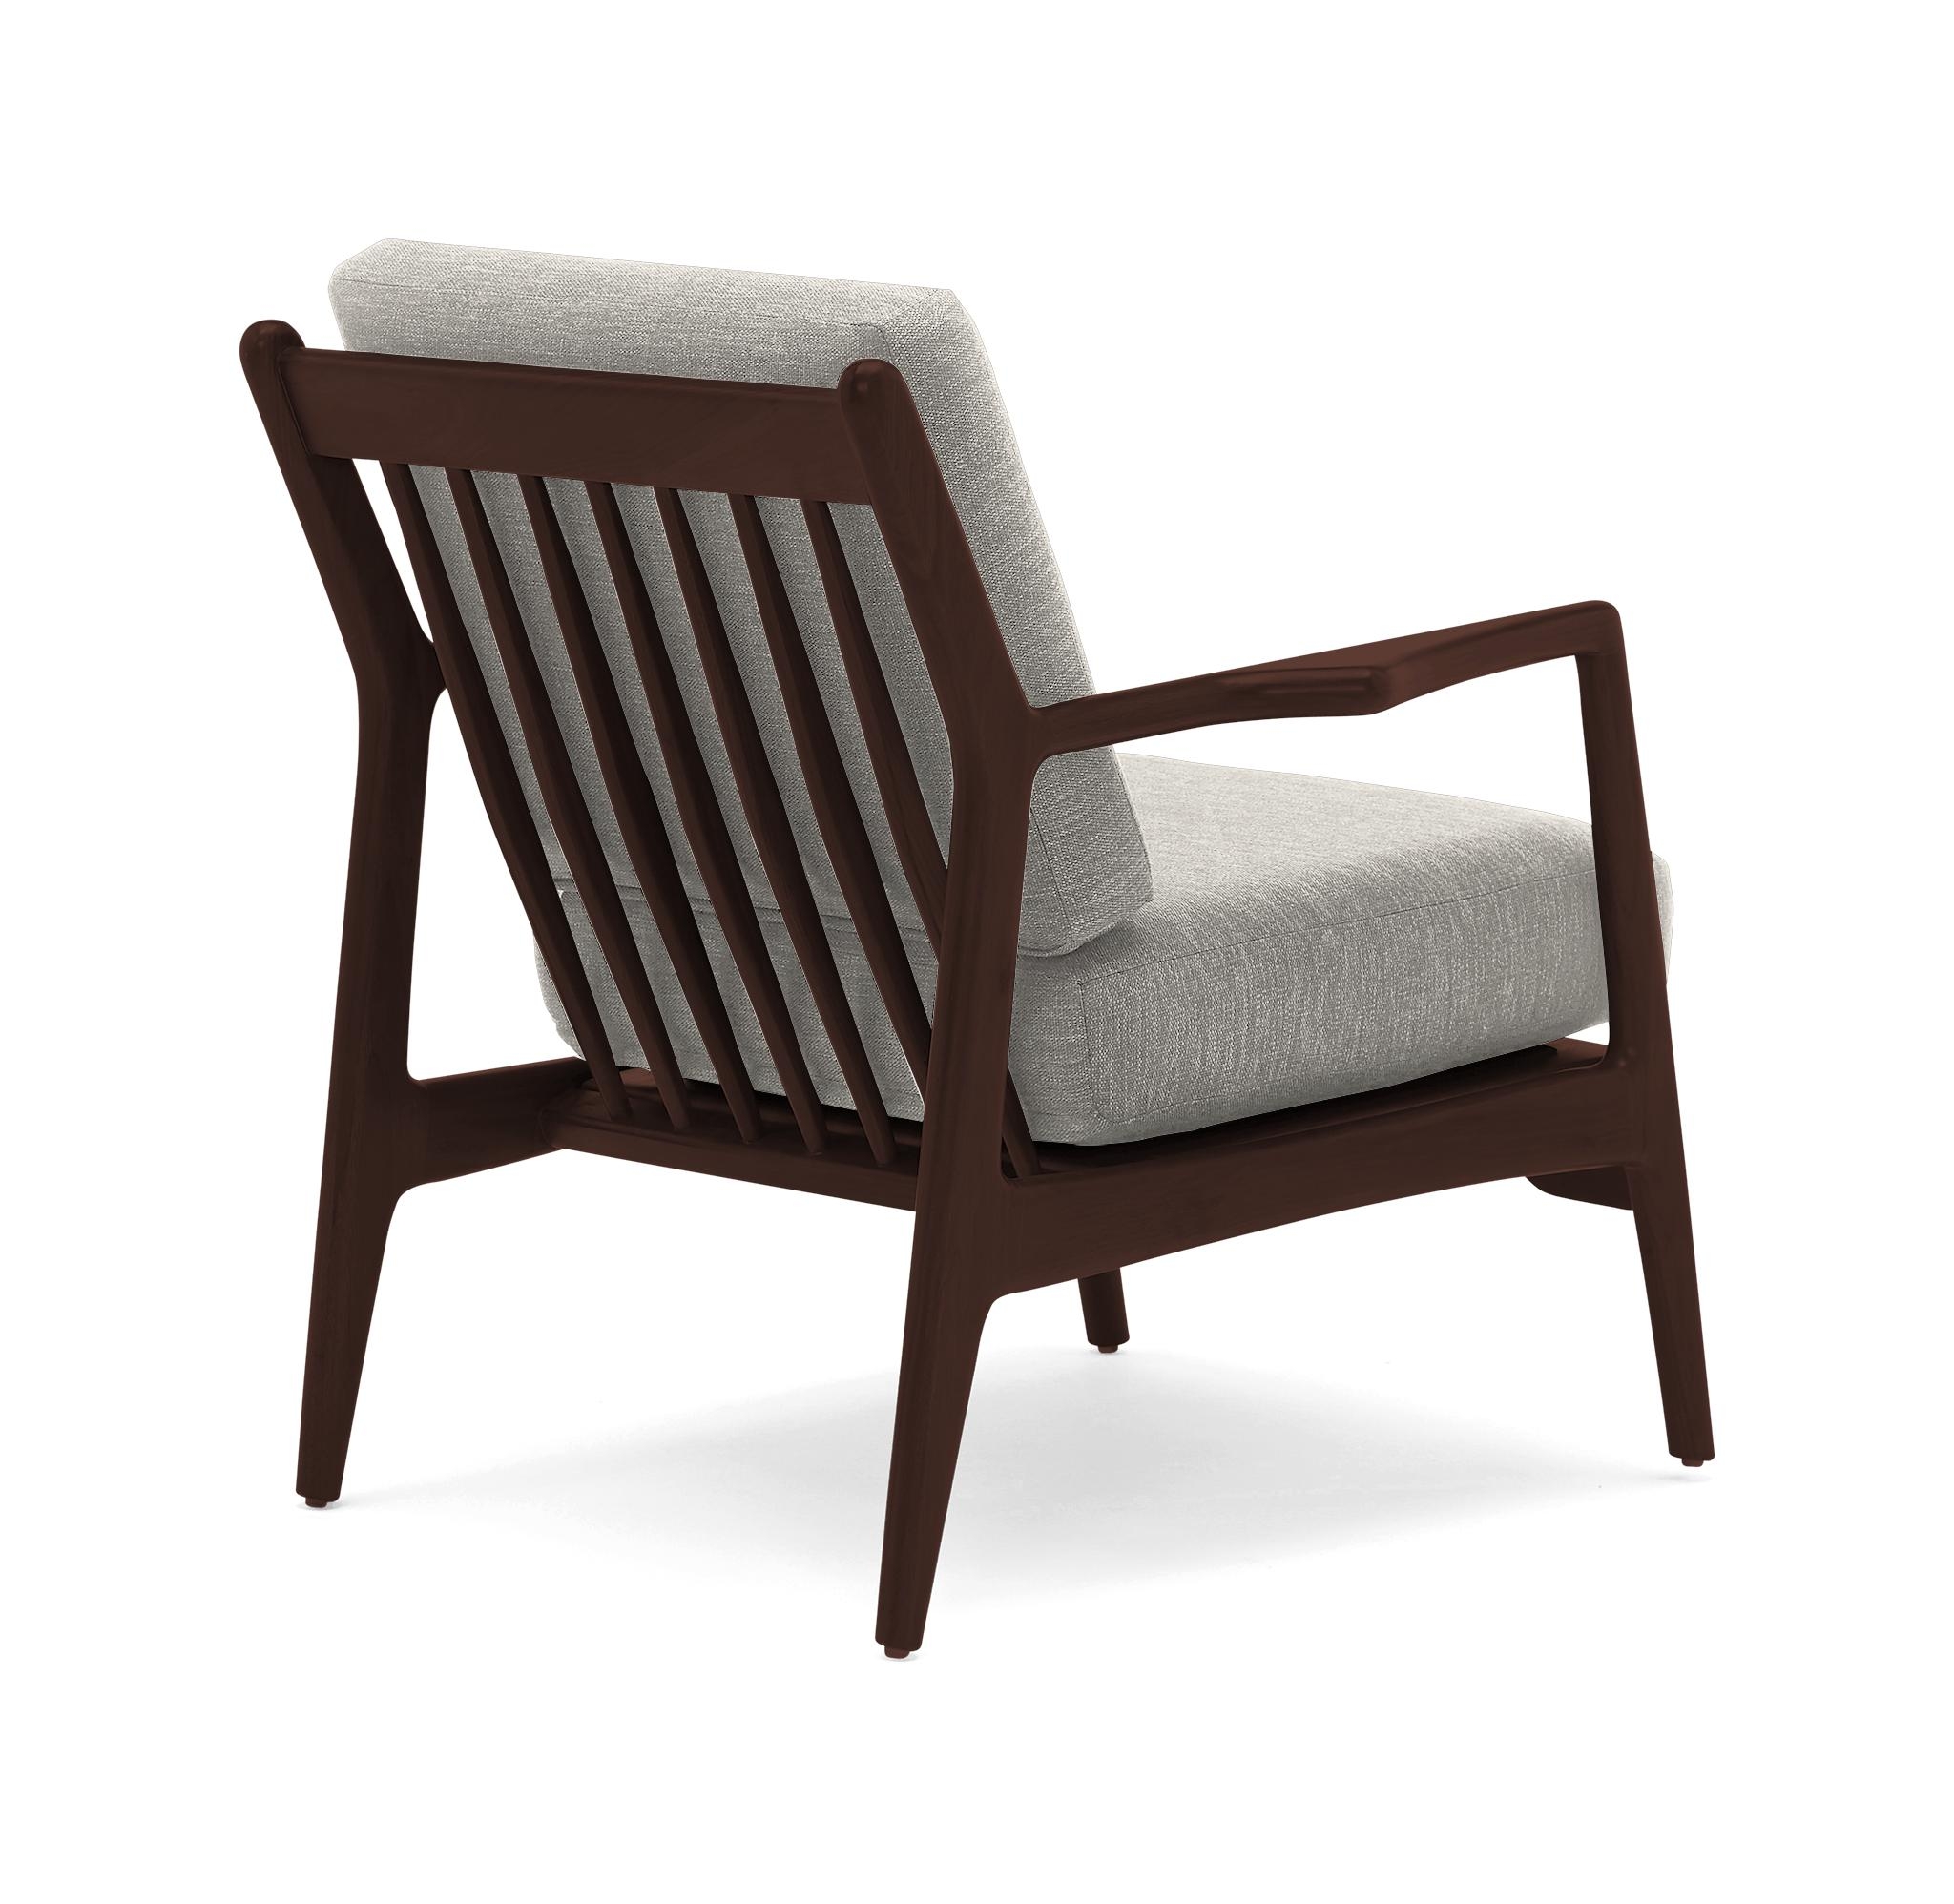 White Collins Mid Century Modern Chair - Bloke Cotton - Walnut - Image 3